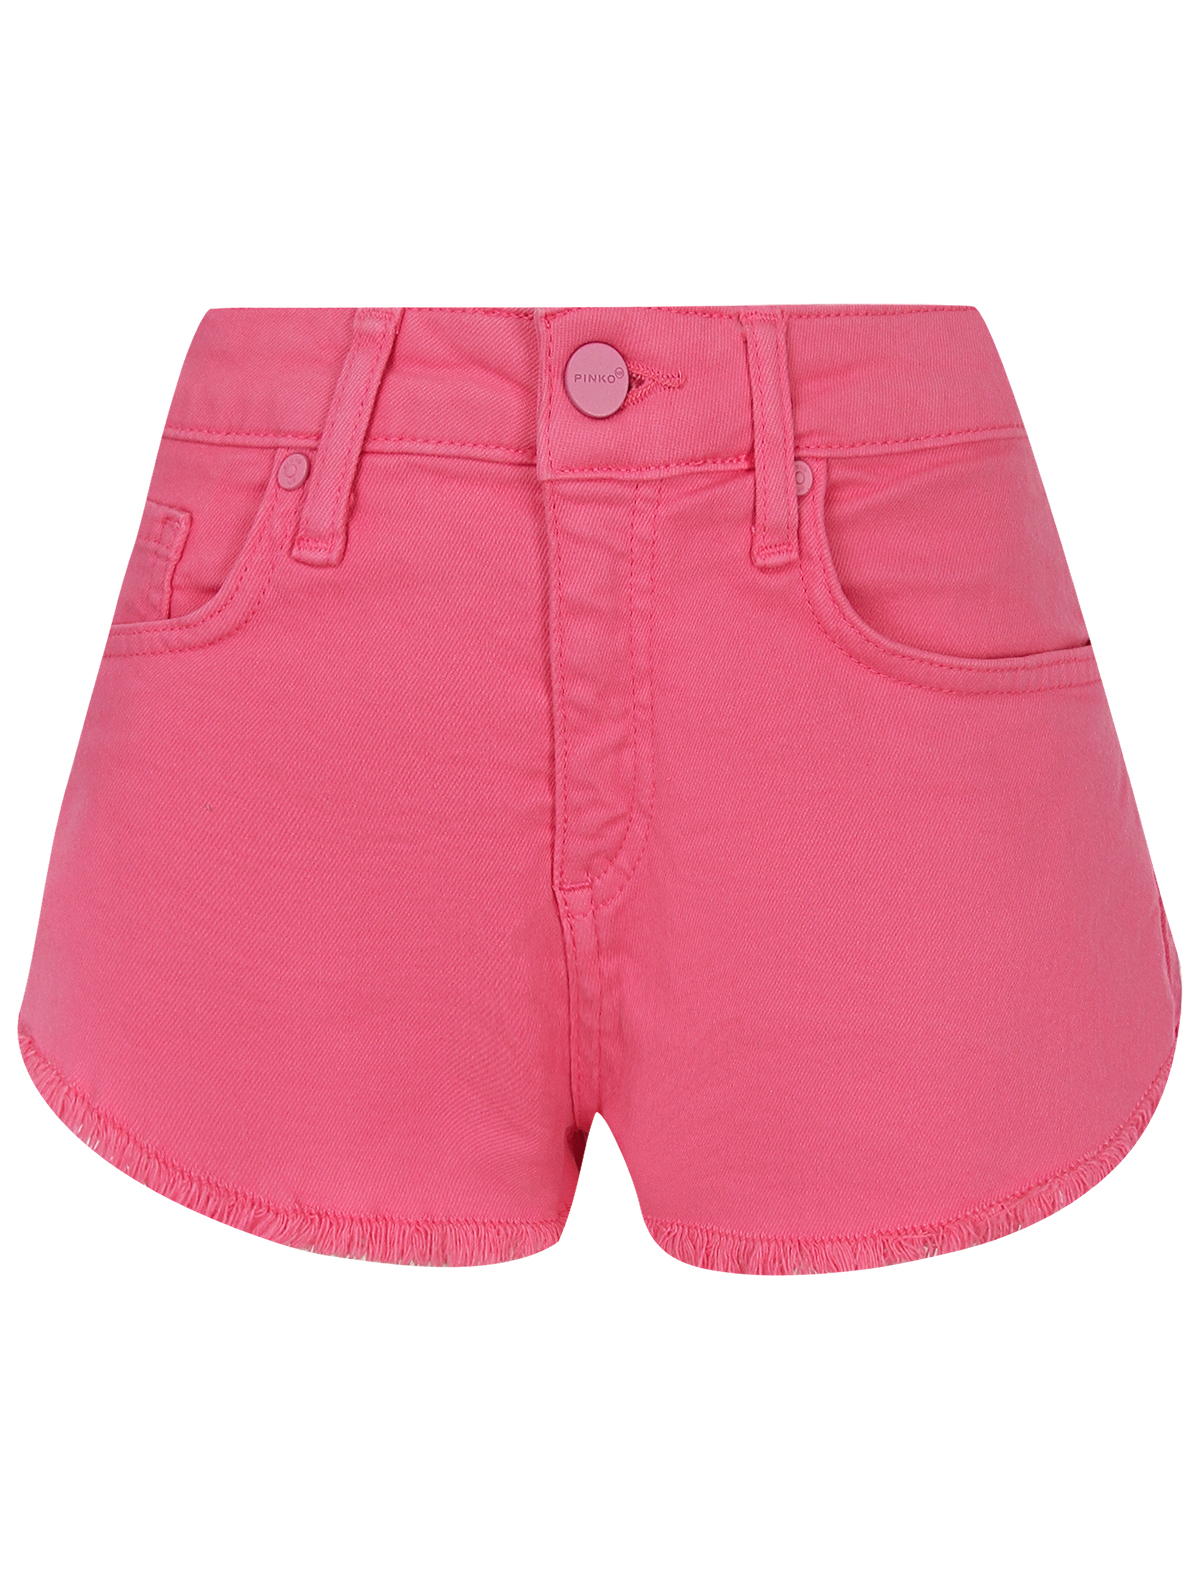 шорты pinko для девочки, розовые